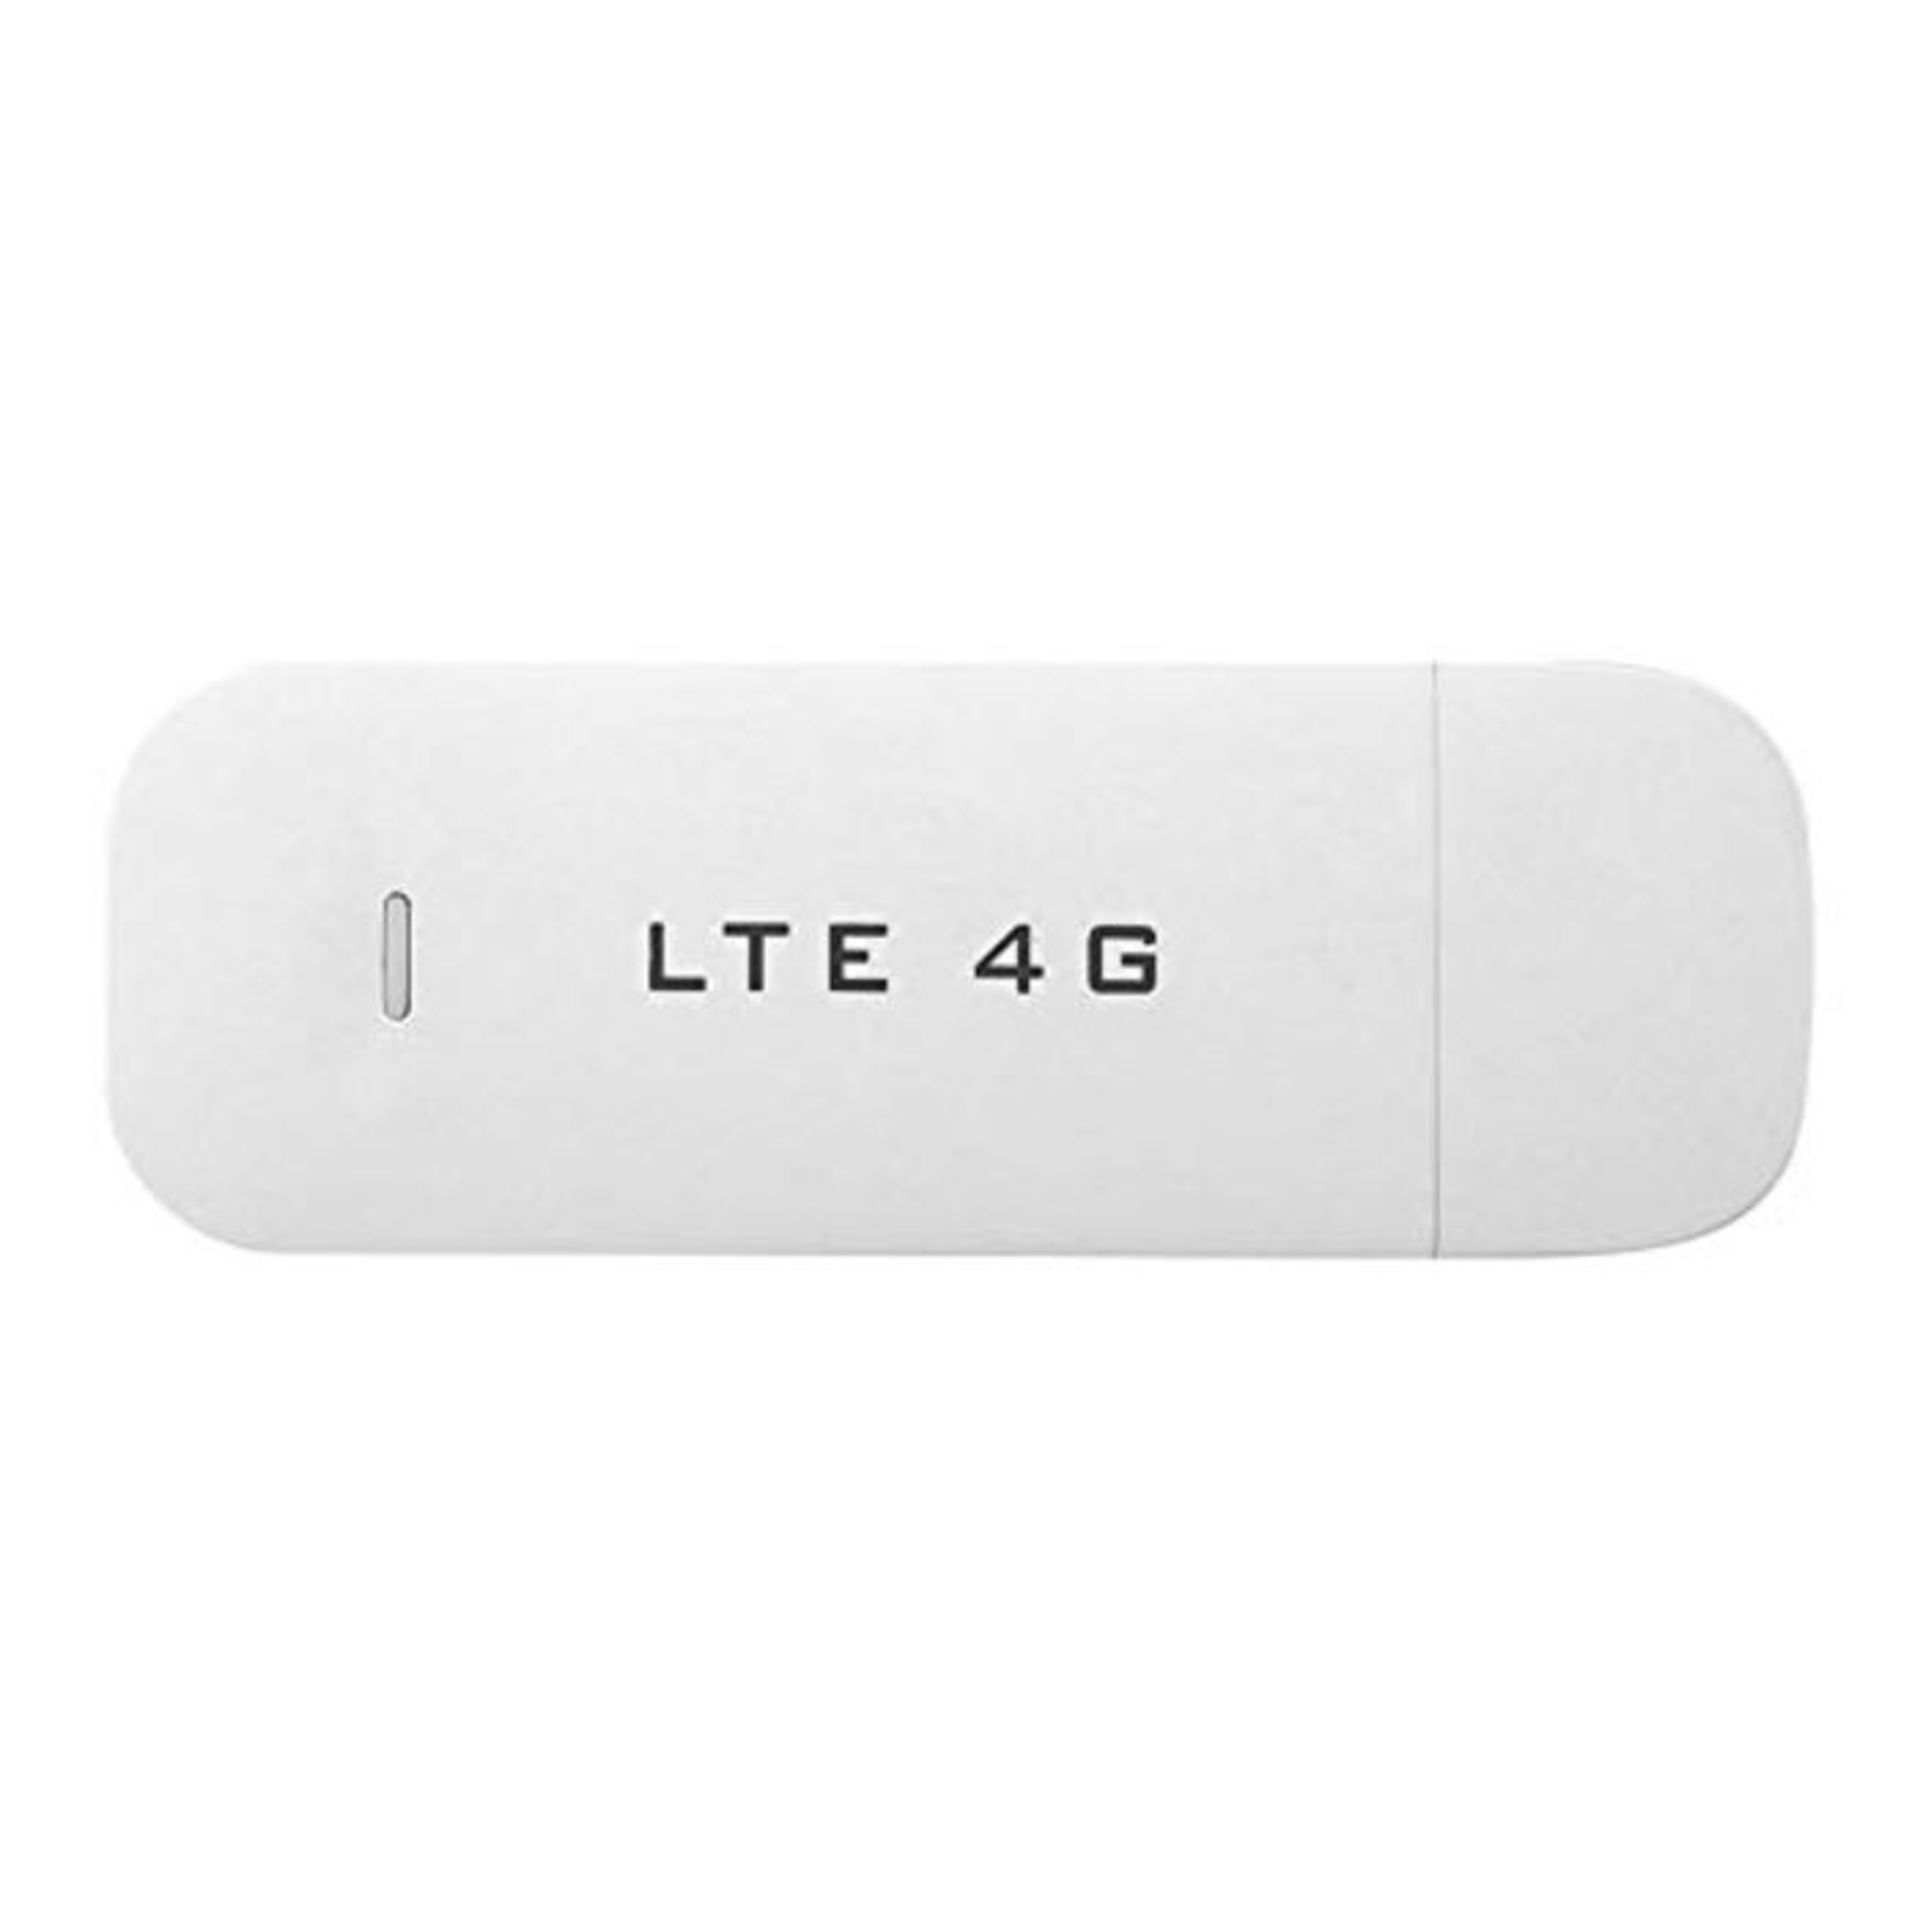 4G LTE USB Modem Network Adapter Wireless USB Network Card WiFi Hotspot Router Modem S